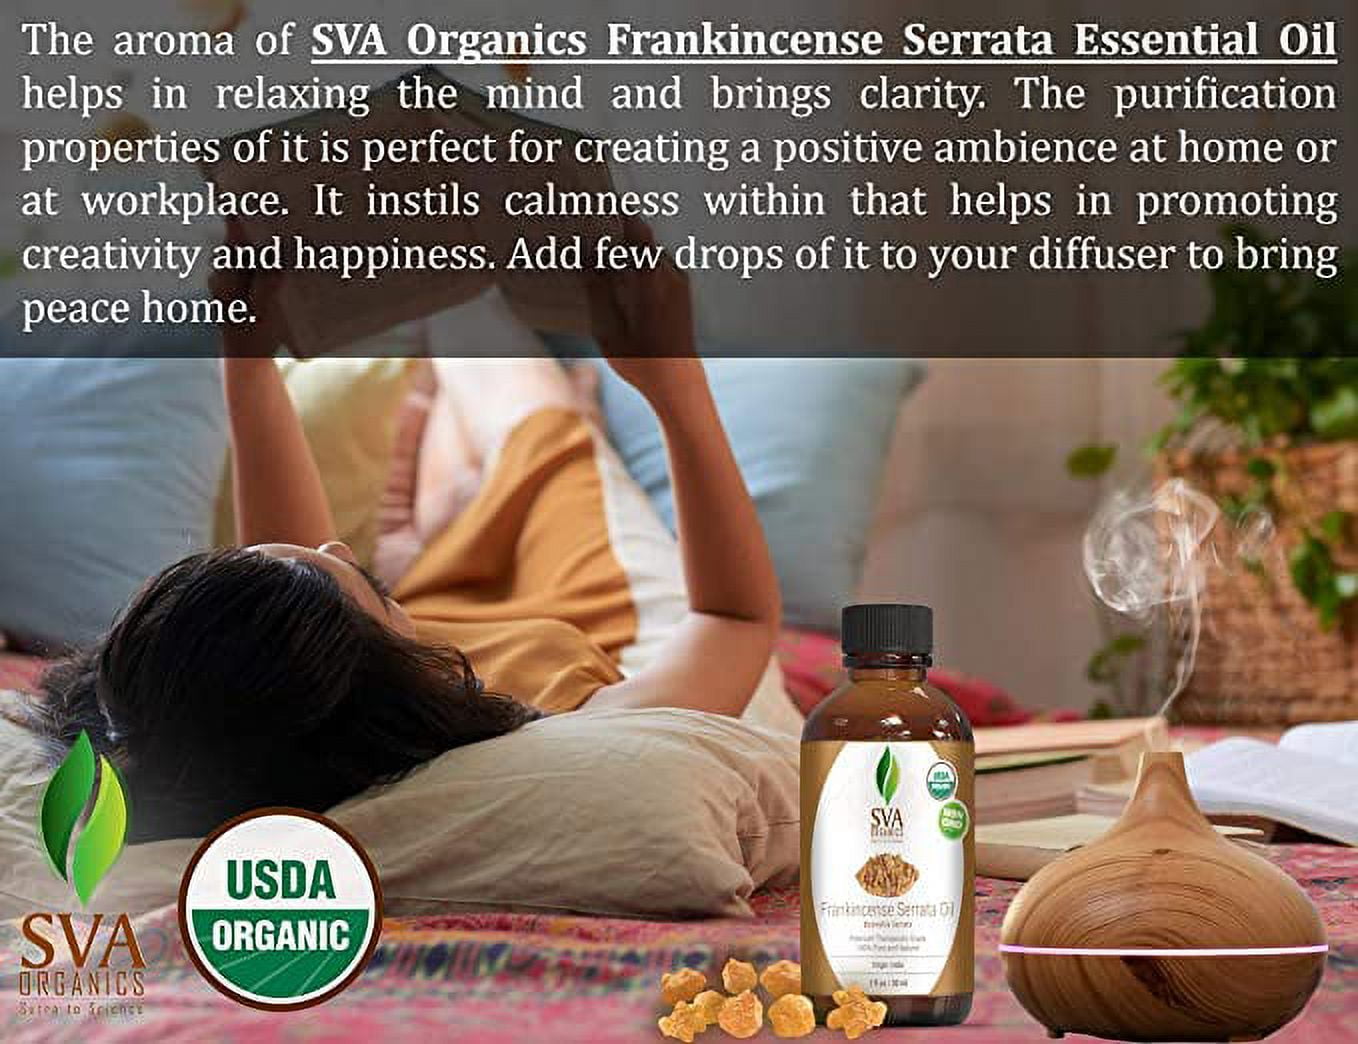 SVA Frankincense Essential Oil 1oz (30ml) Boswellia Serrata Premium  Essential Oil with Dropper for Diffuser, Aromatherapy, Hair Care and Skin  Massage